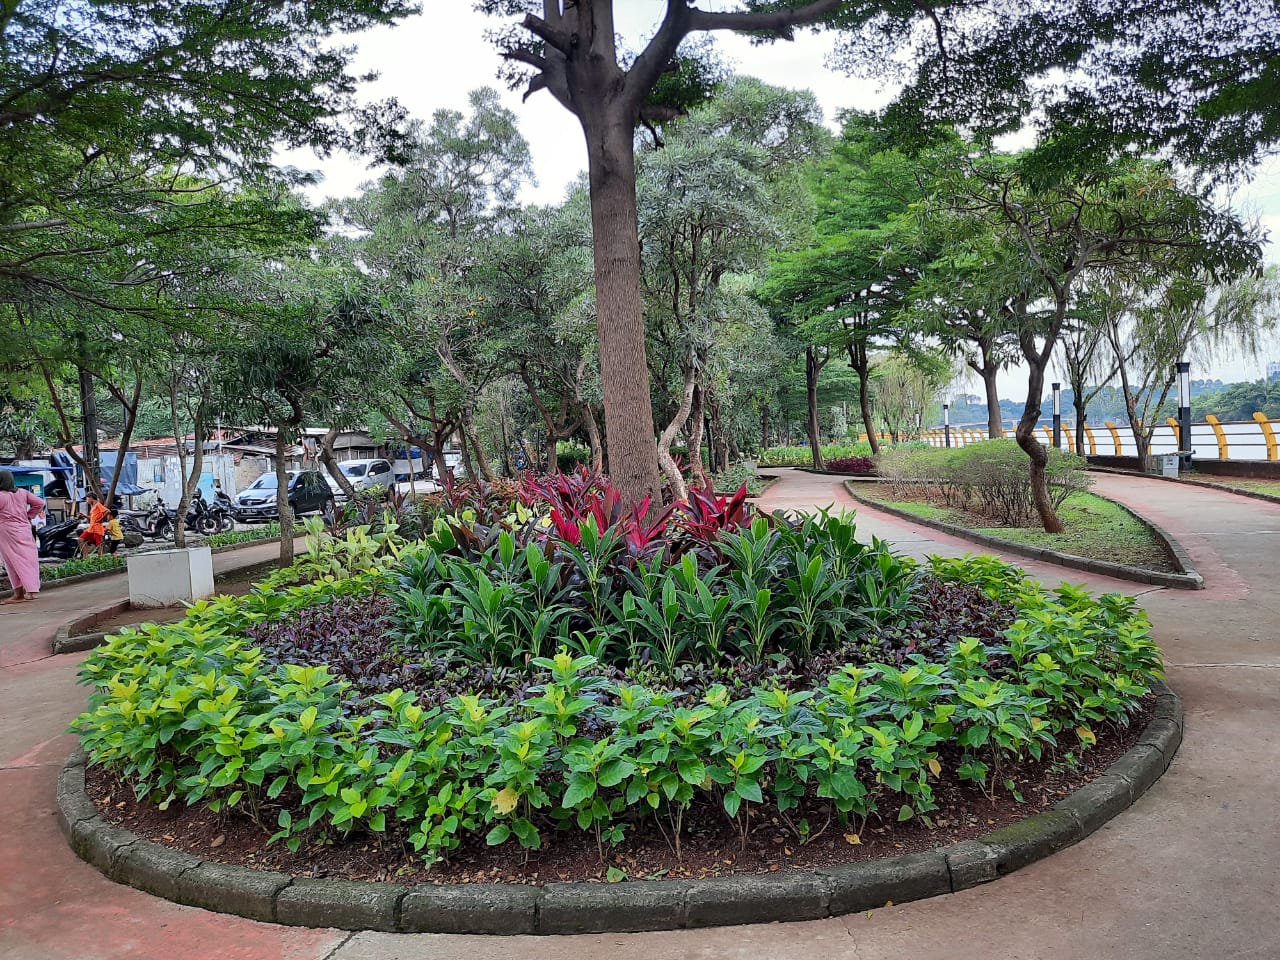 Taman Eco Park di Jalan Pintu air, Kelurahan Mekarsari, Kecamatan Neglasari, Kota Tangerang, Rabu (31/03/2021).